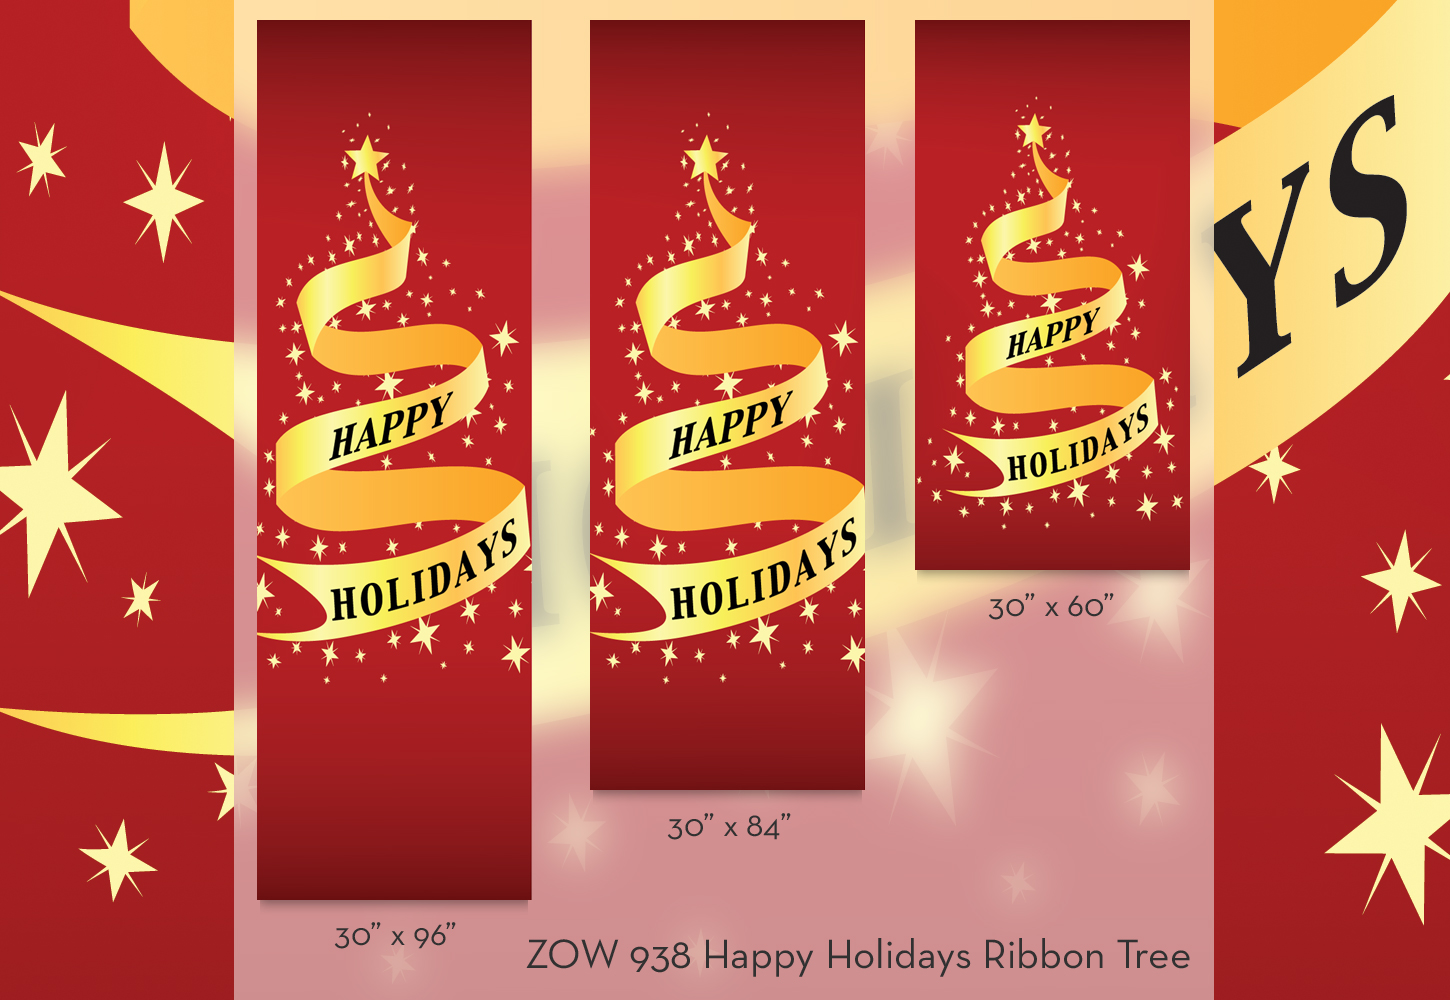 ZOW 938 Happy Holidays Ribbon Tree